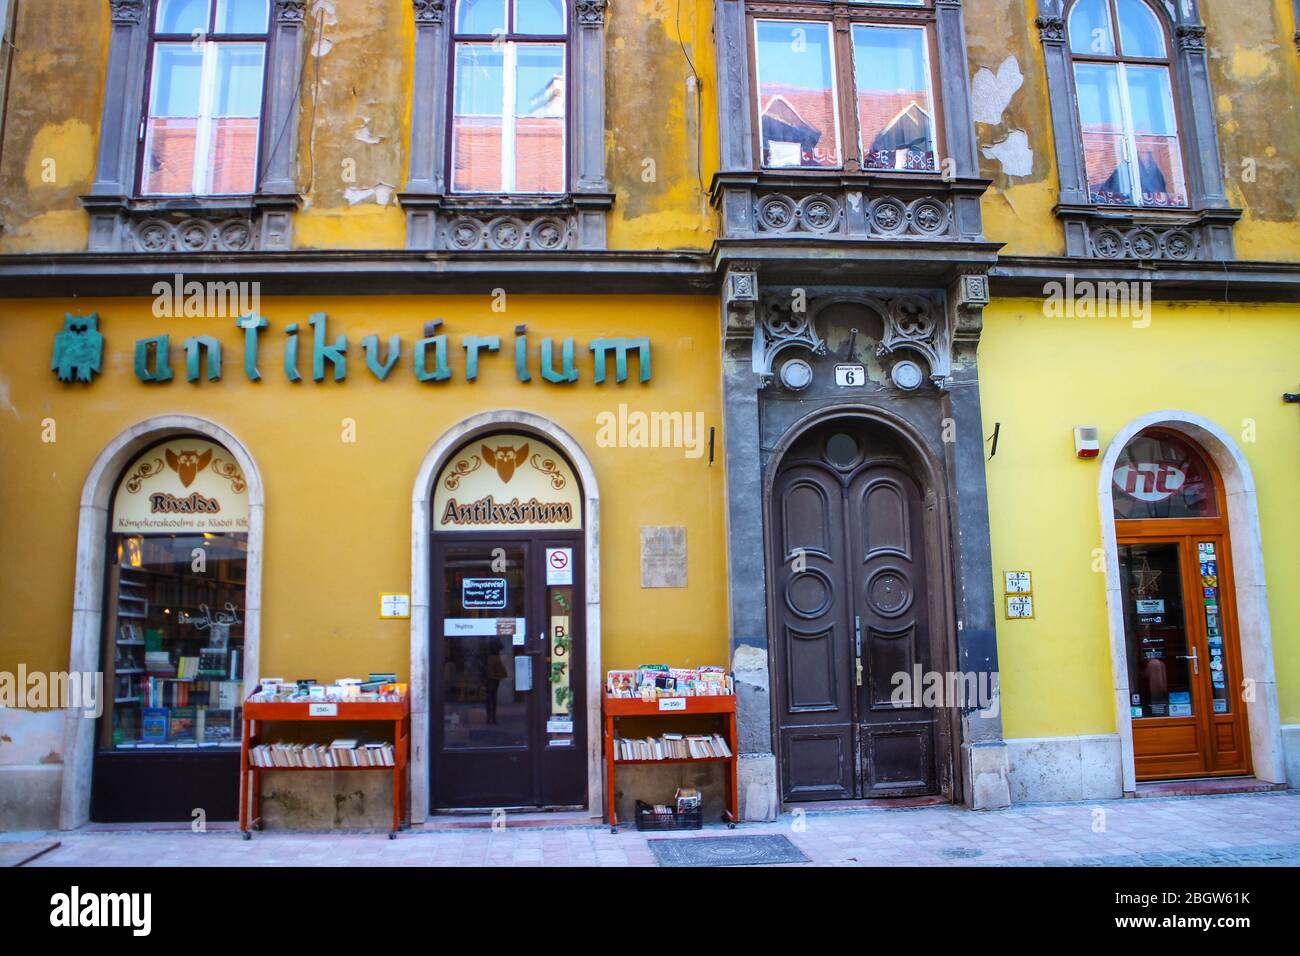 Alte Buchhandlung in einem gelben historischen Gebäude in Györ, Ungarn, einer großen Stadt zwischen Wien und Budapest im westlichen Transdanubien. Stockfoto